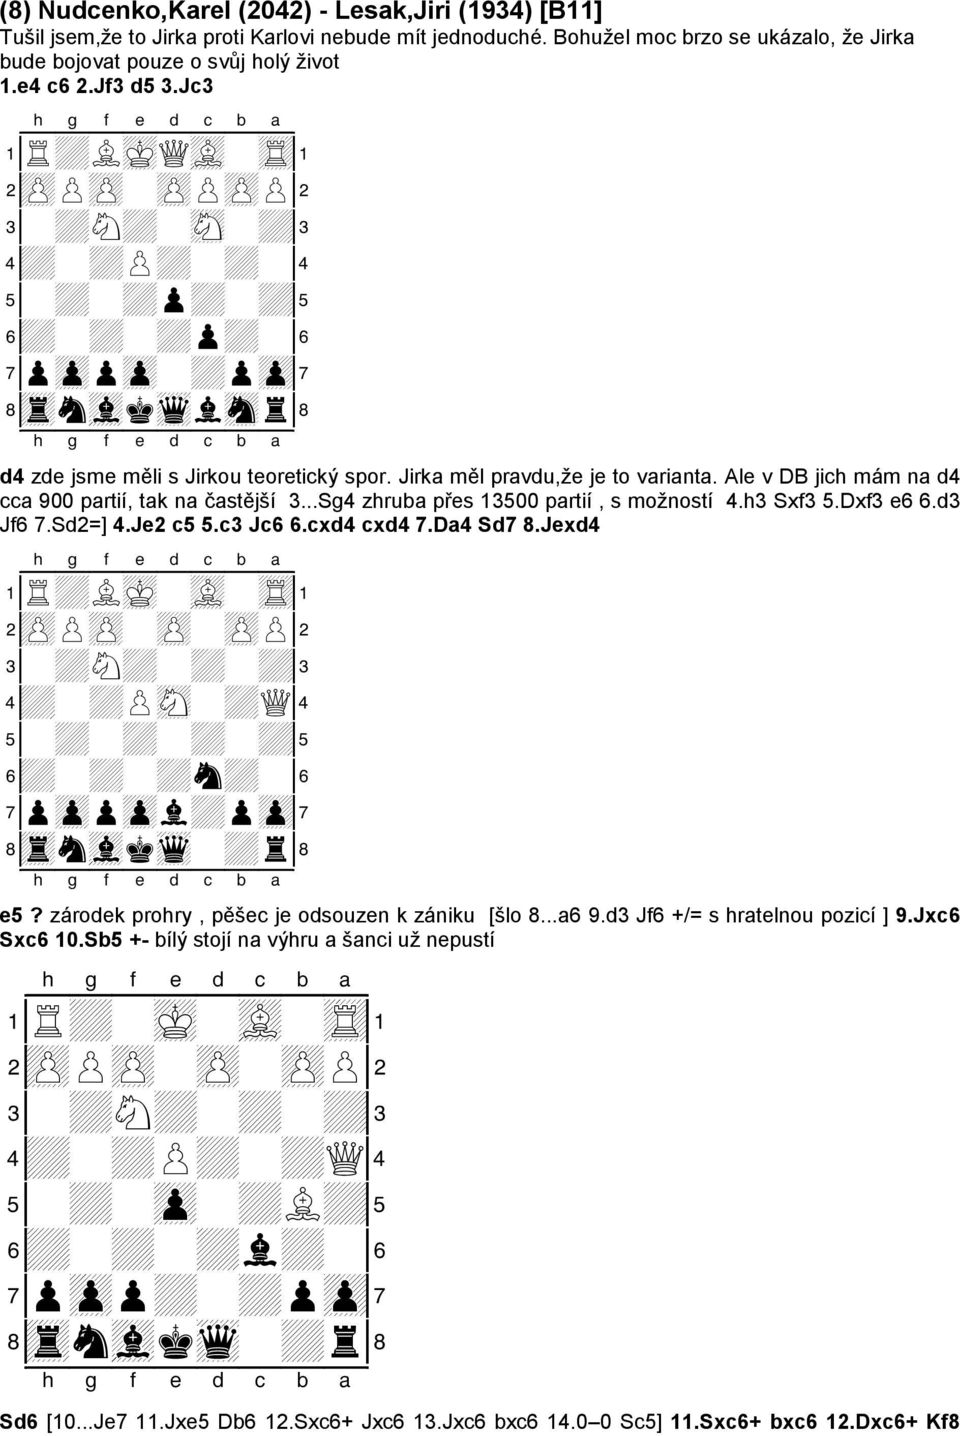 Ale v DB jich mám na d4 cca 900 partií, tak na častější 3...Sg4 zhruba přes 13500 partií, s možností 4.h3 Sxf3 5.Dxf3 e6 6.d3 Jf6 7.Sd2=] 4.Je2 c5 5.c3 Jc6 6.cxd4 cxd4 7.Da4 Sd7 8.Jexd4 1R+LmK-vL-tR!